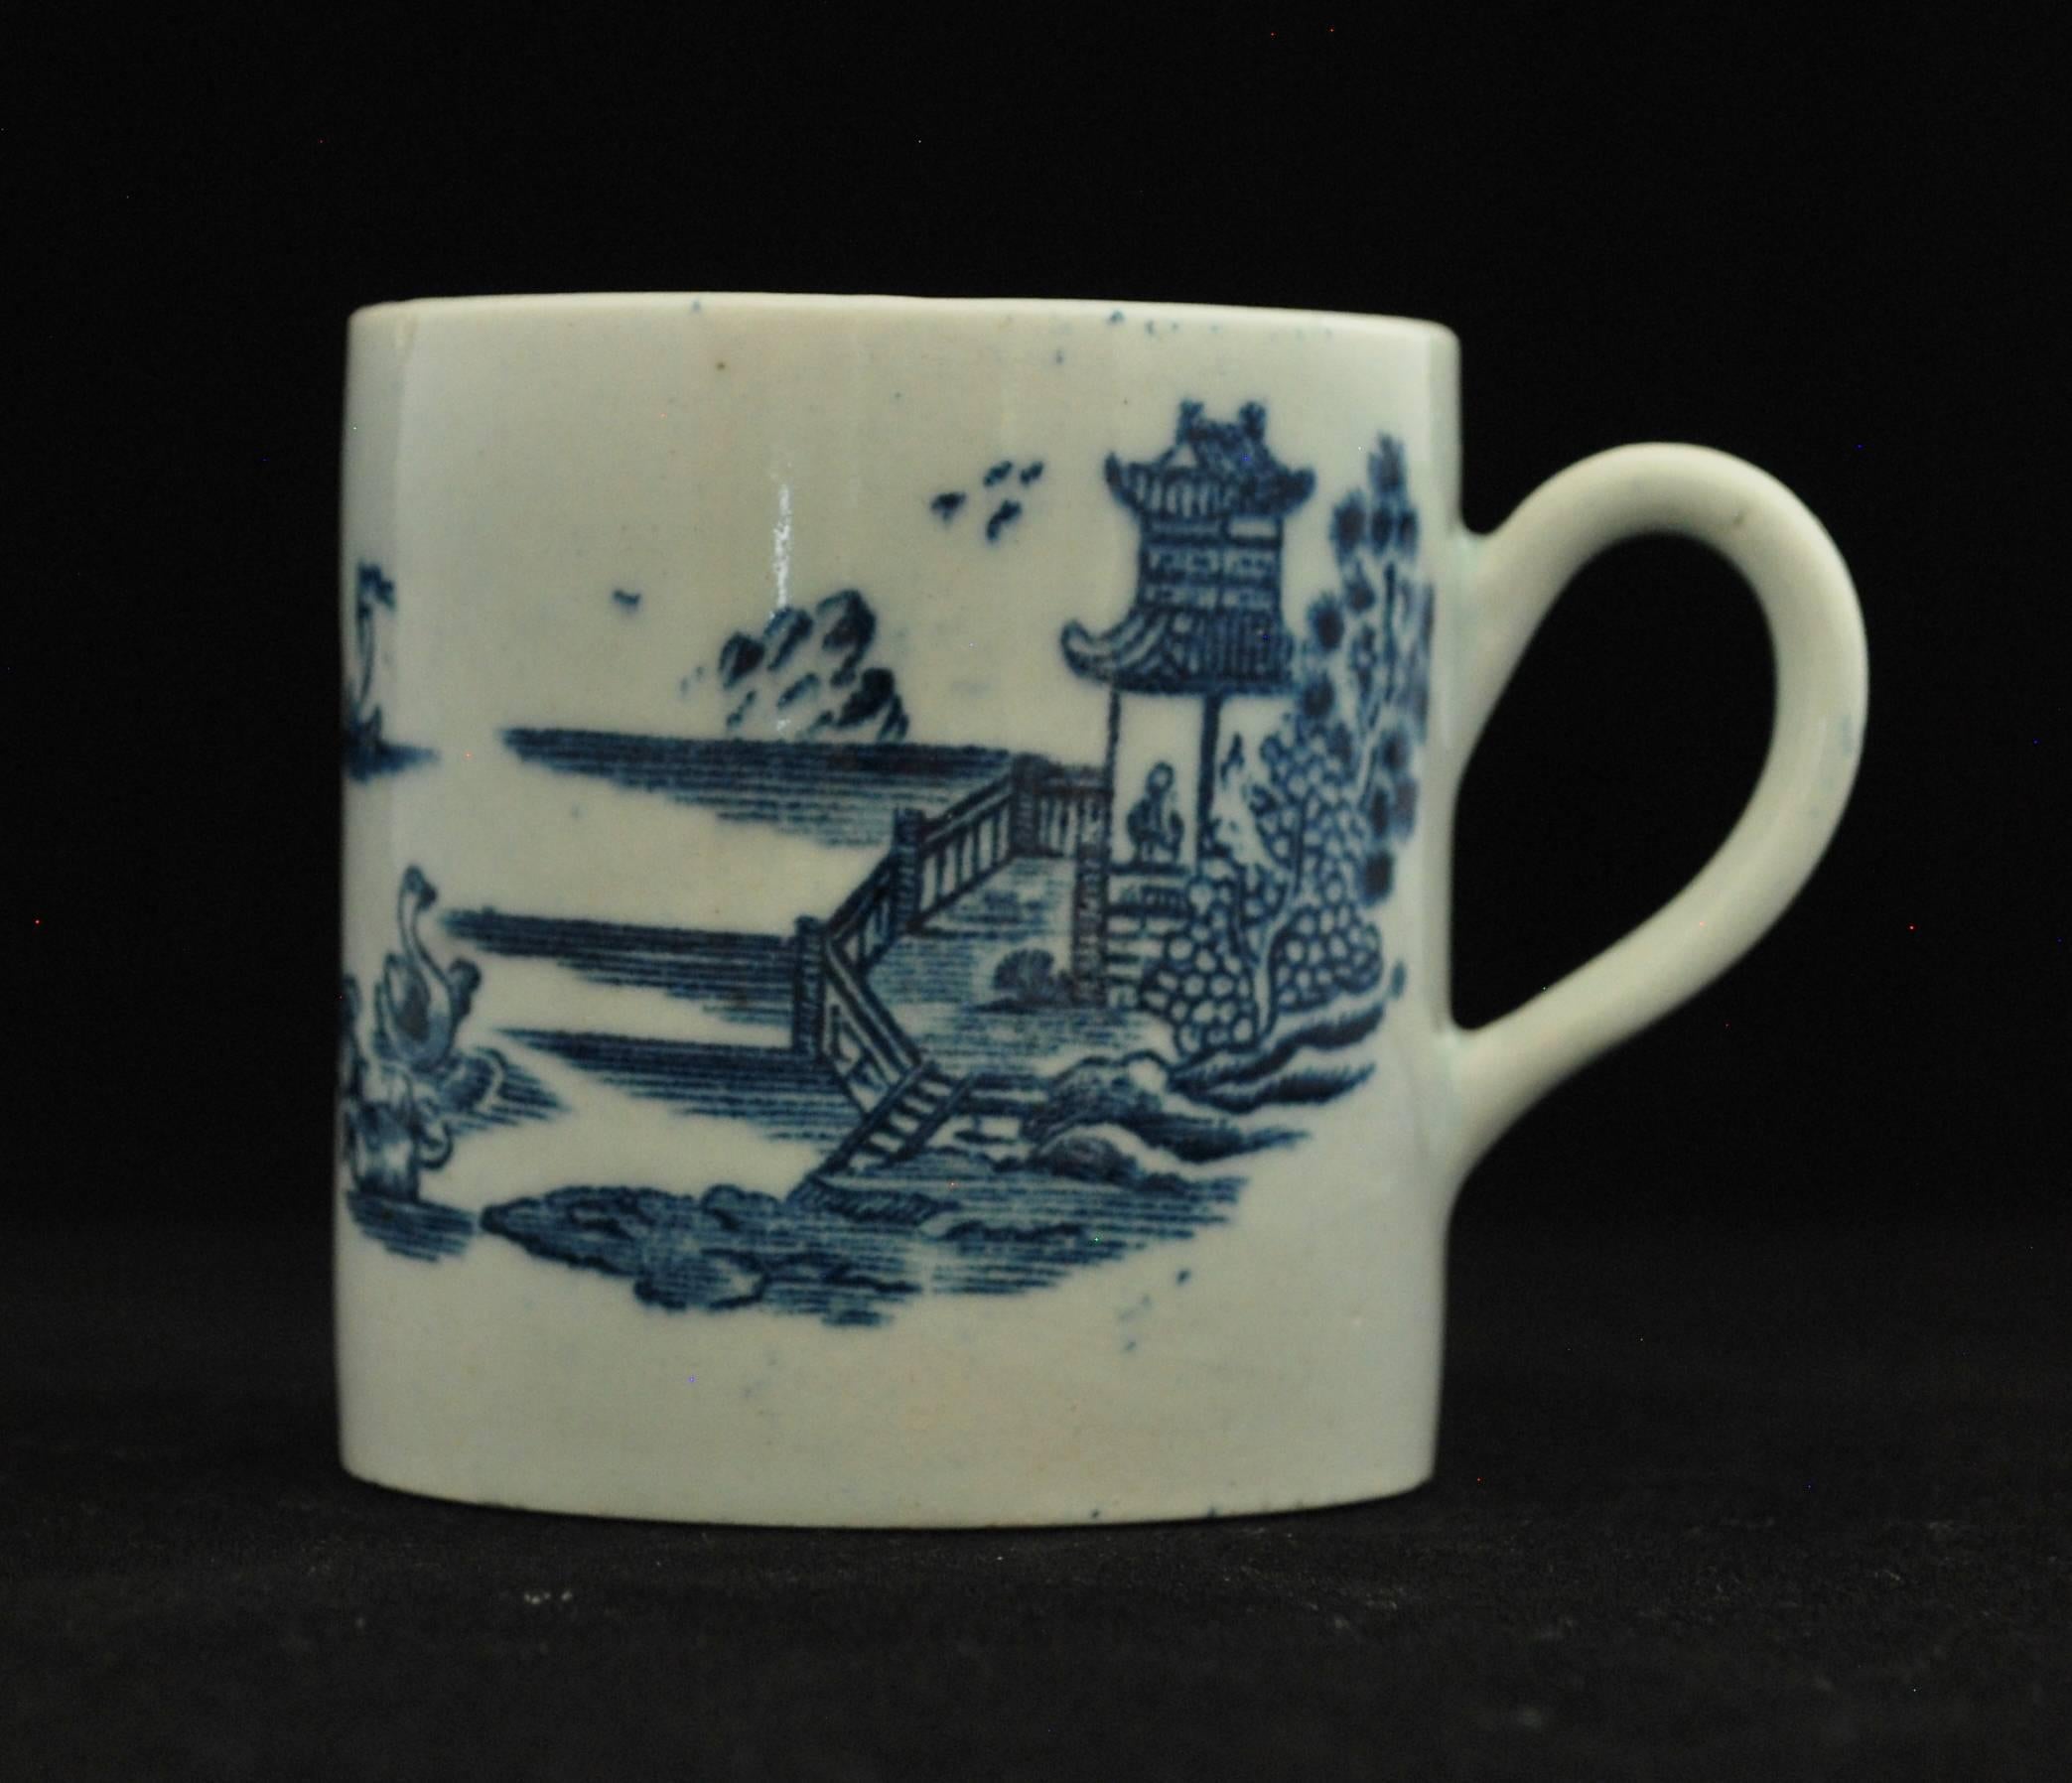 Décorée d'une gravure en bleu sous glaçure représentant un paysage chinois, avec un homme à la fenêtre d'une pagode, admirant des cygnes sur le lac.

Bow n'a pas produit beaucoup de porcelaine imprimée par transfert. Sur les 12 tasses à café de la